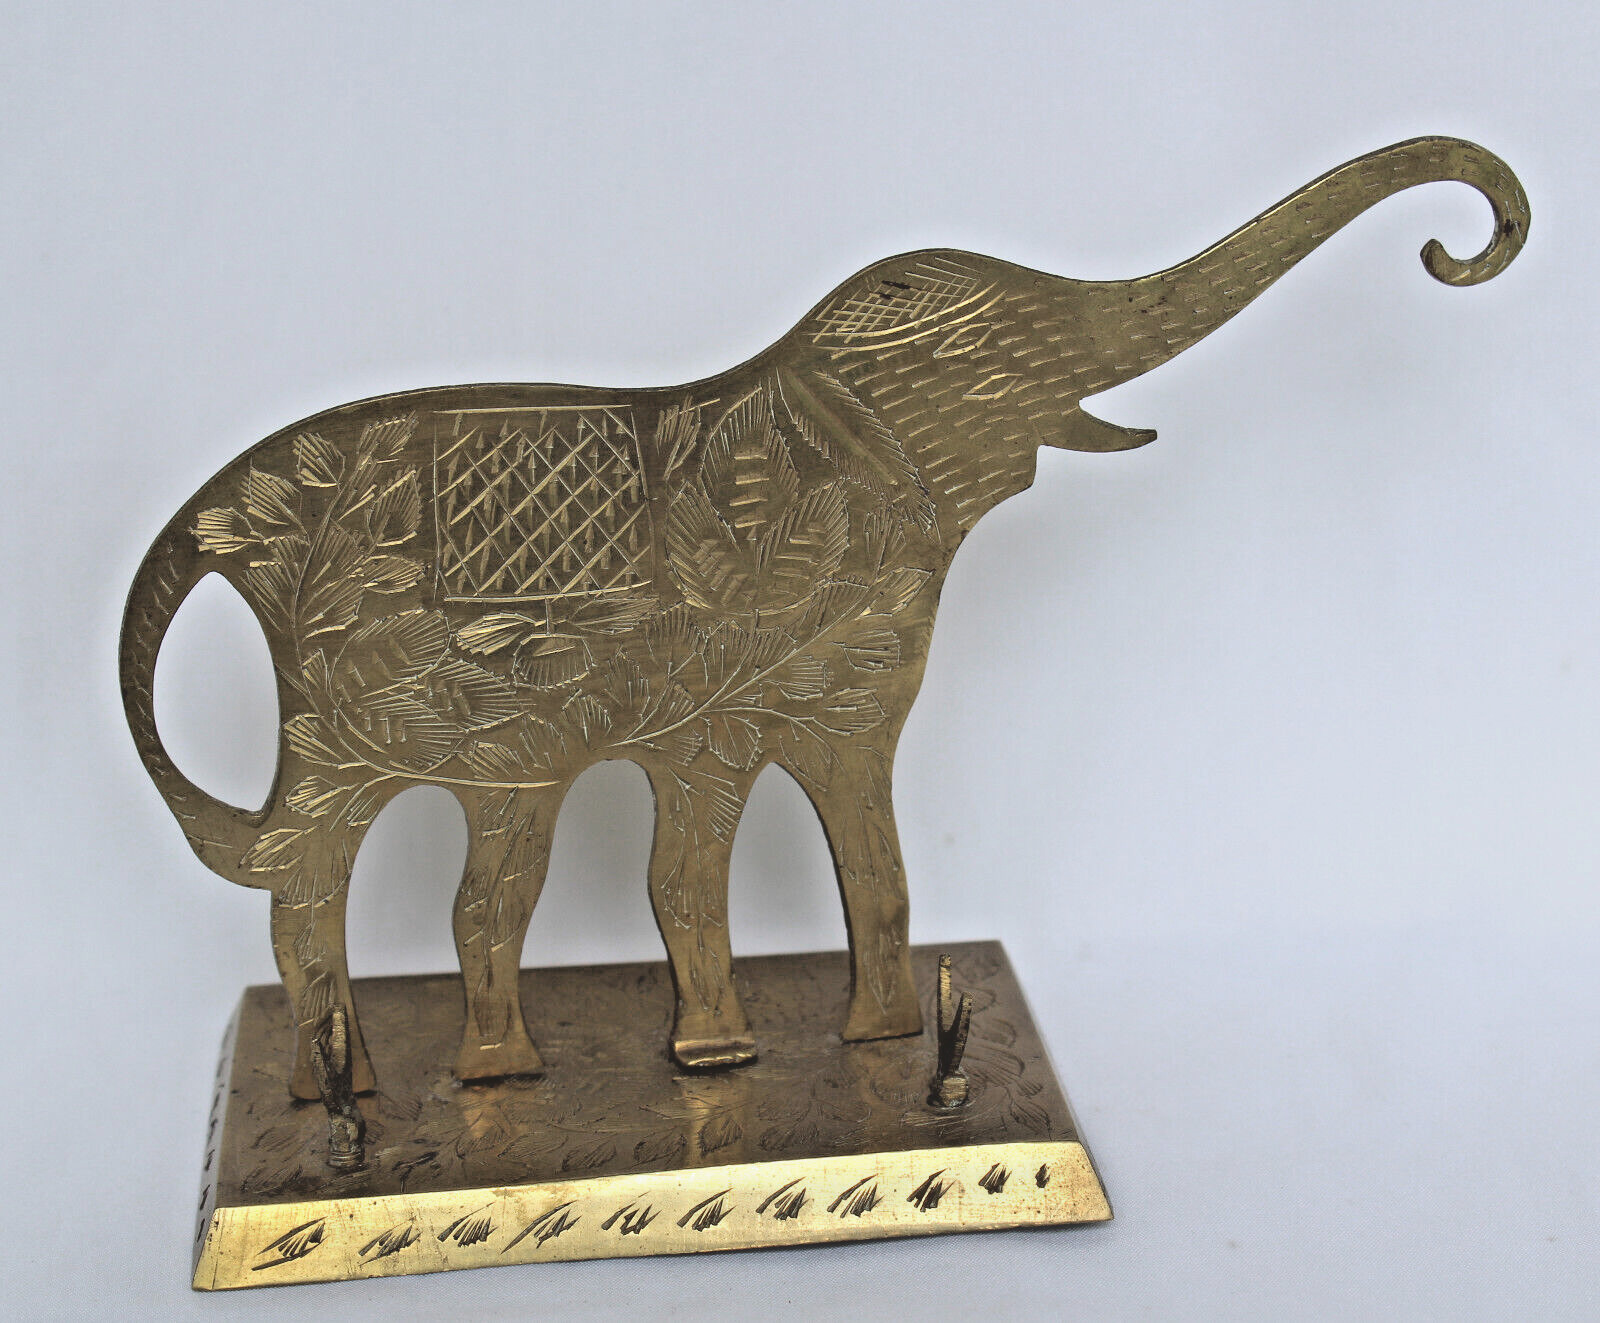 Vintage Solid Brass Elephant Ink Fountain Pen Holder Etched Design Desk Decor